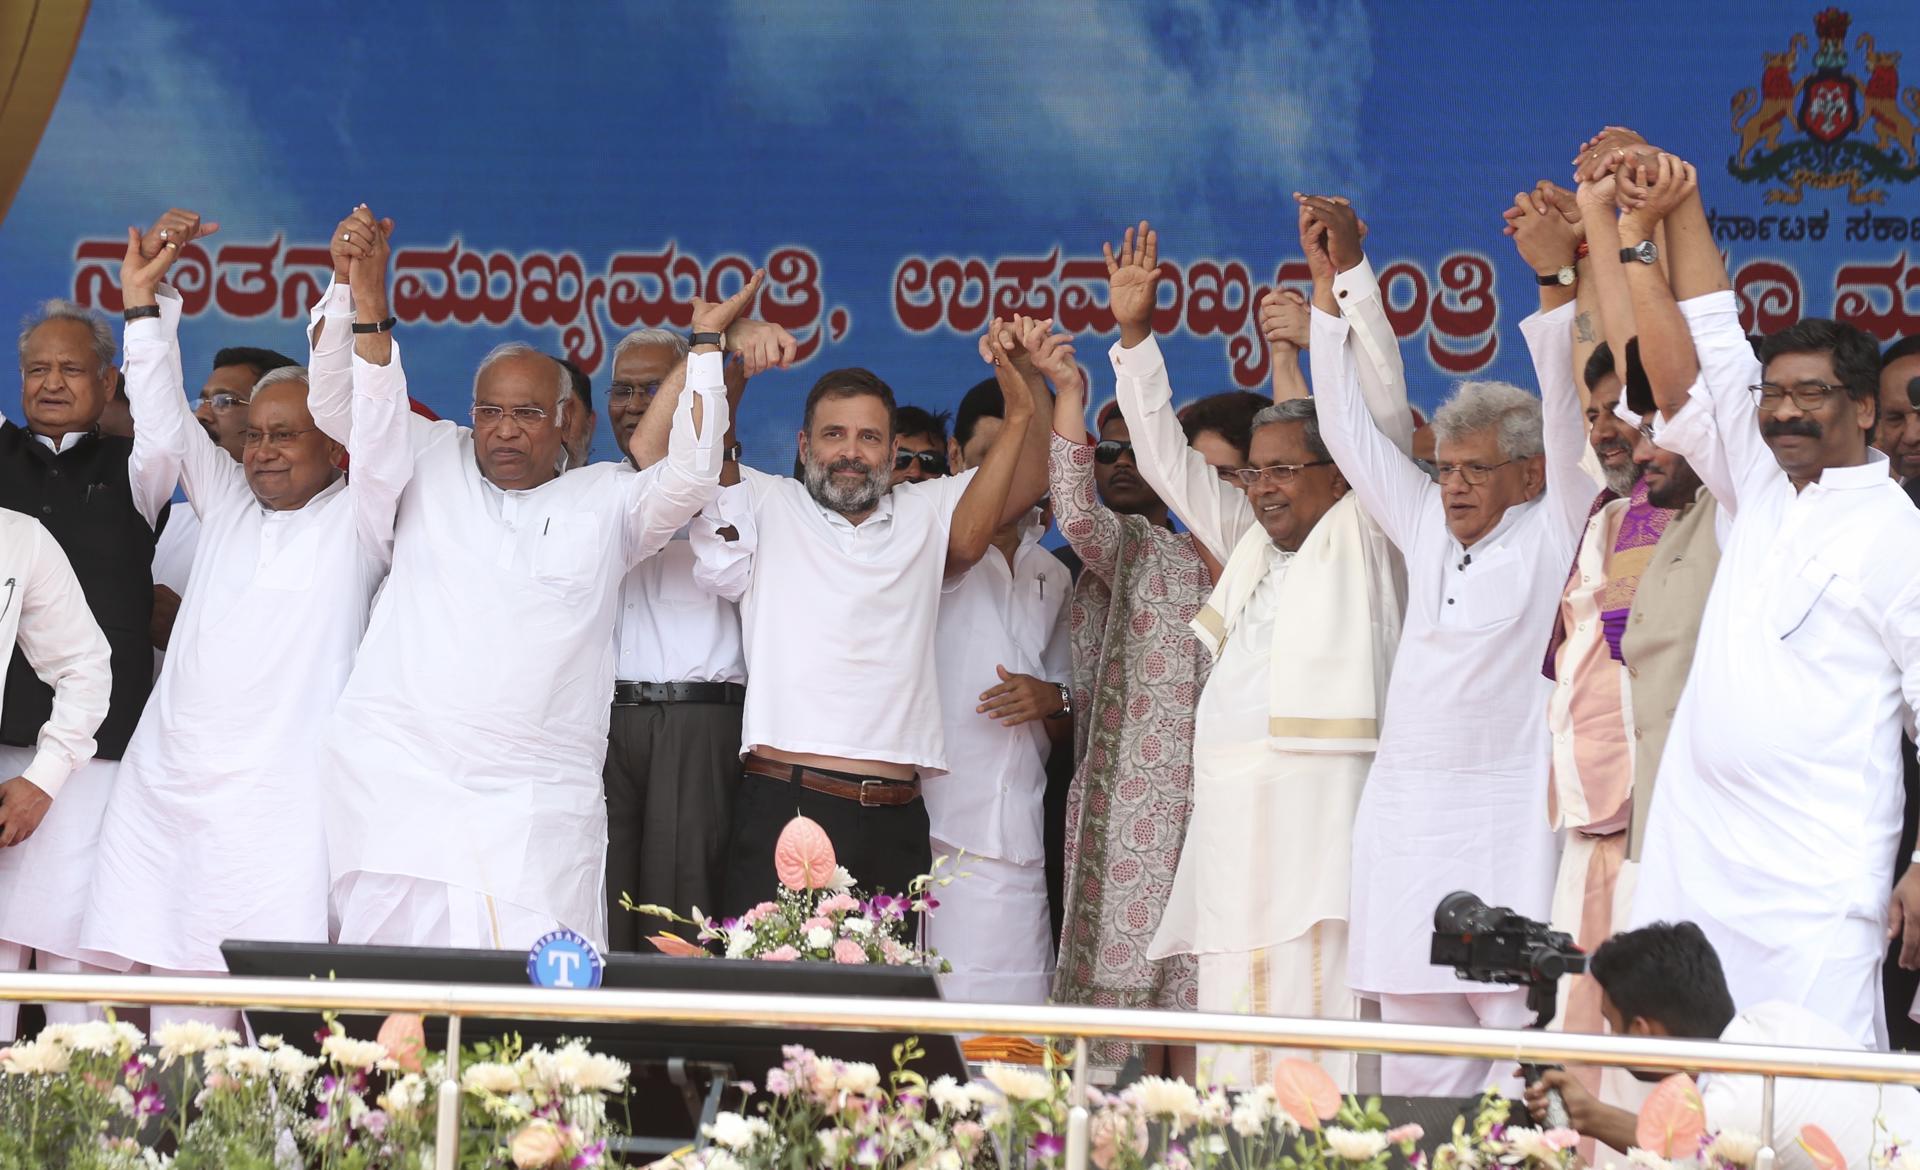 Senior Congress party leaders attend Congress leader Siddaramaiah swearing in ceremony as the Chief Minister of Karnataka, at Shree Kanteerva Stadium in Bangalore, India, 20 May 2023. EFE/EPA/JAGADEESH NV